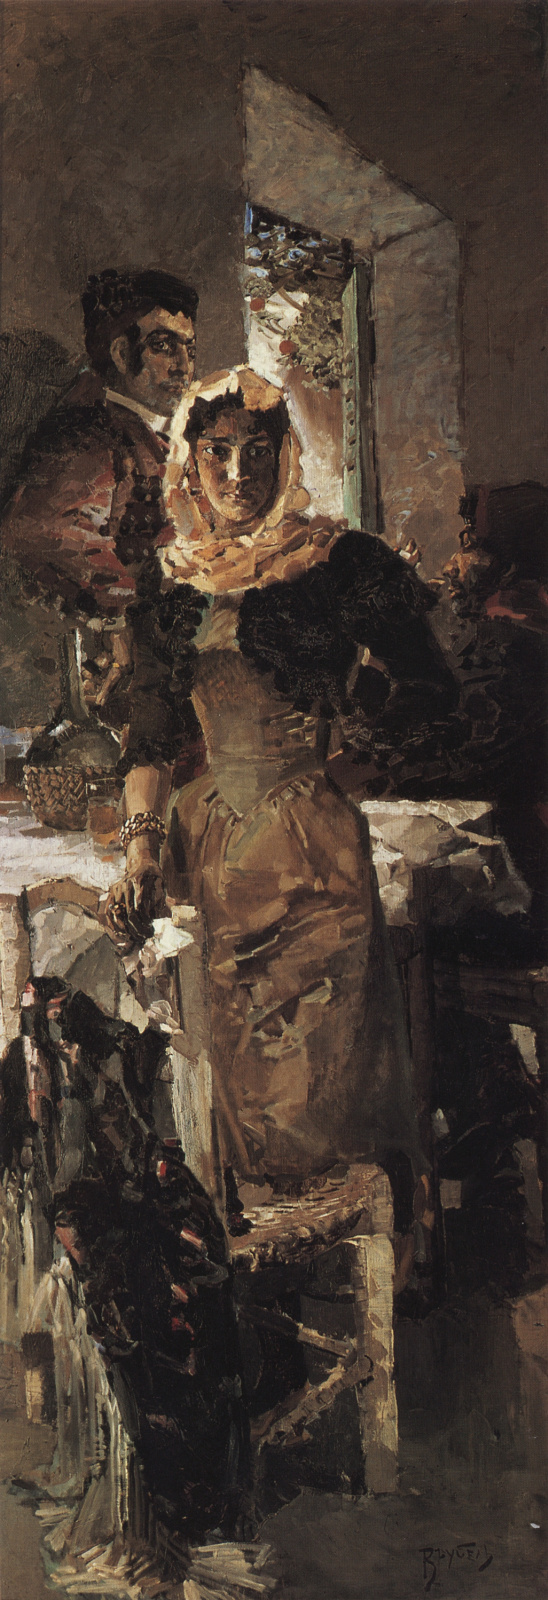 John Singer Sargent Viejo hombre en turbante blanco, 1891, 51×59 cm:  Descripción de la obra